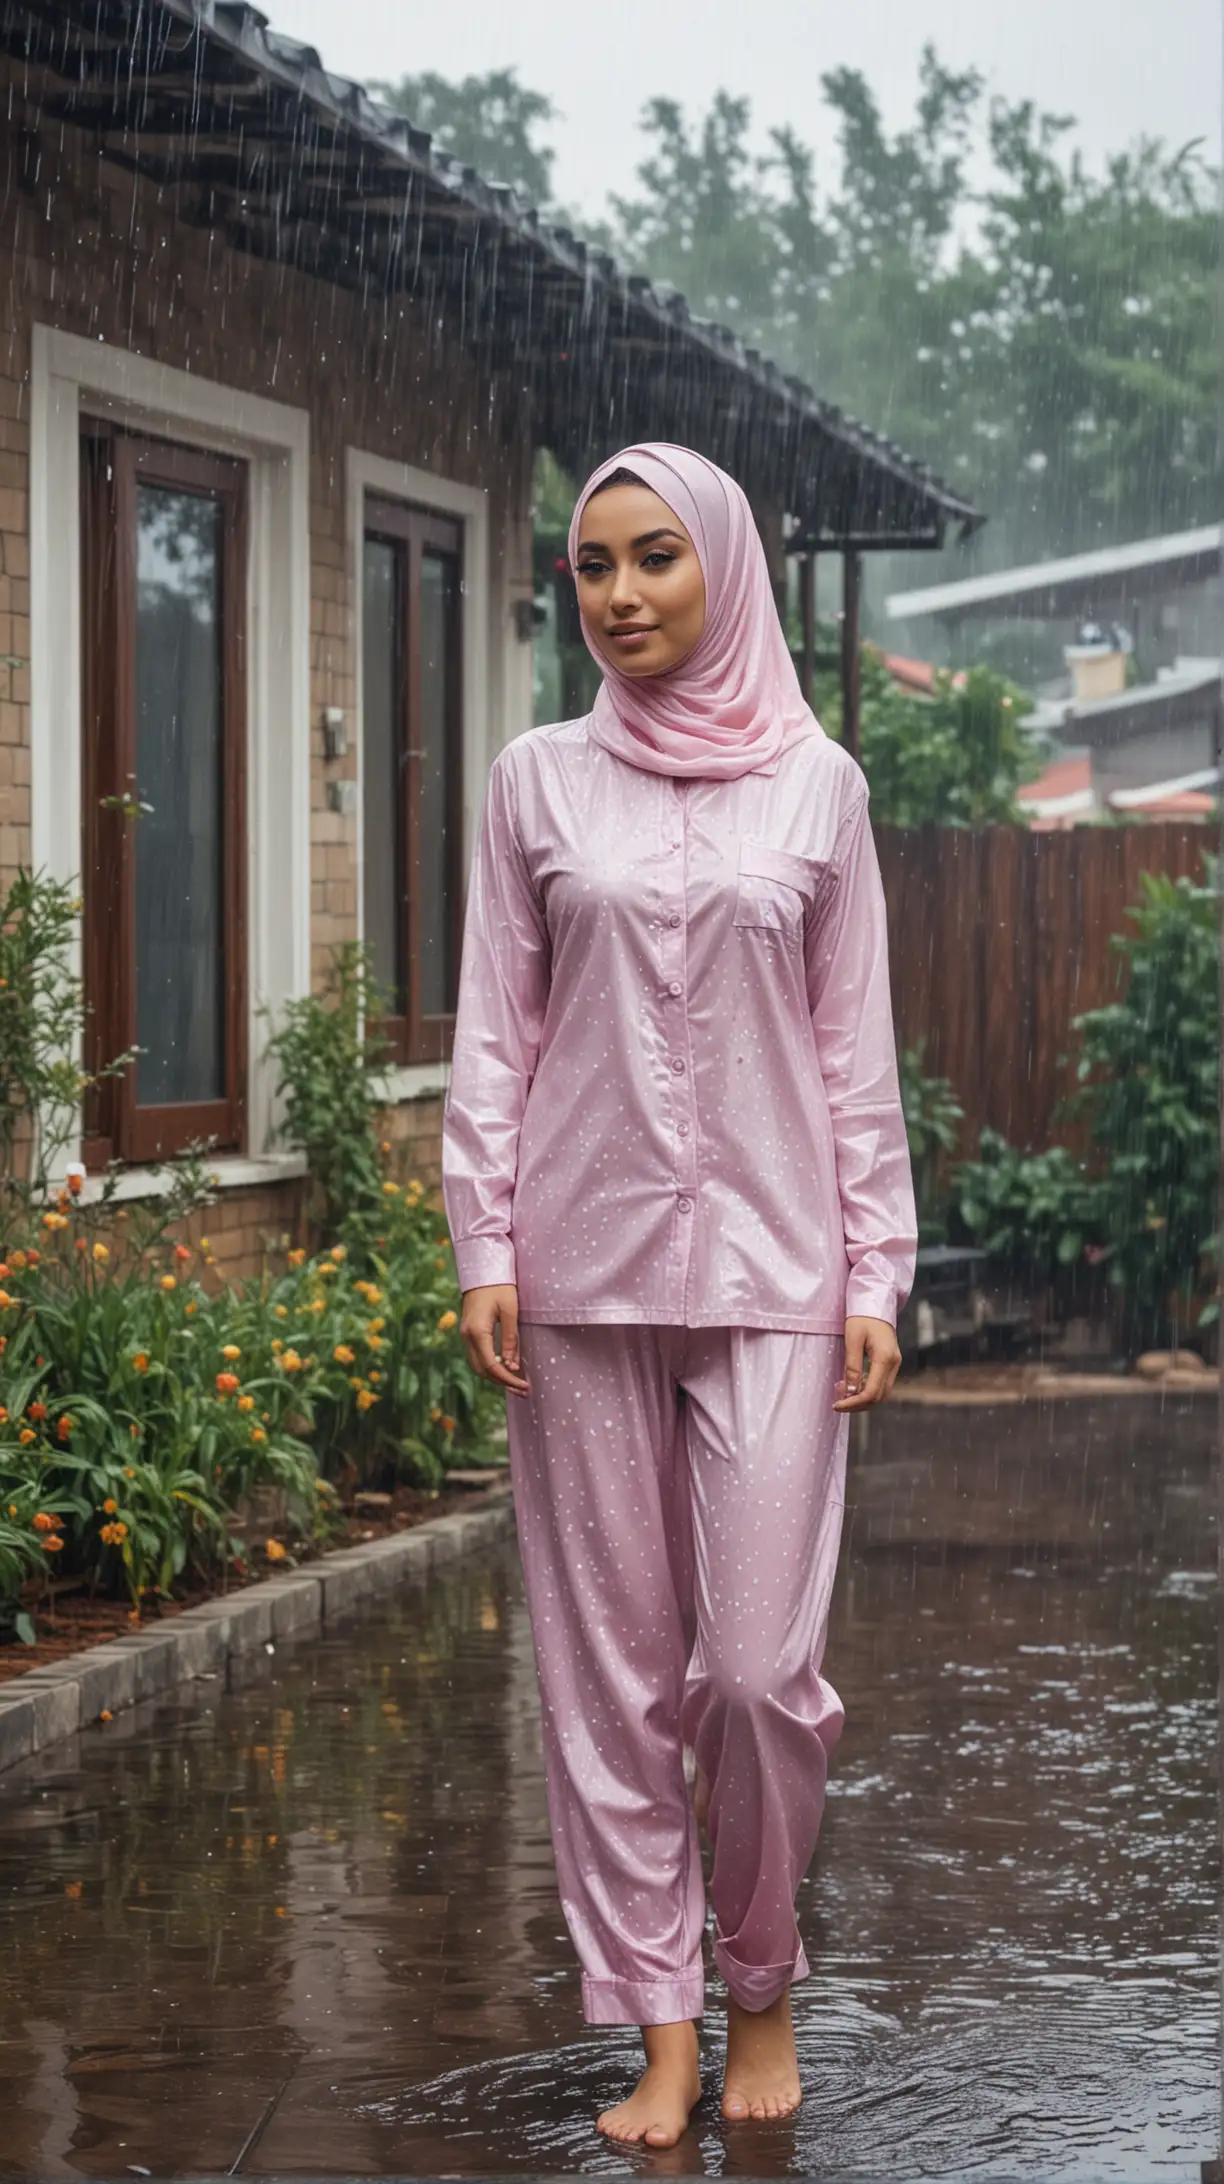 Seorang wanita cantik berhijab dan seksi memakai piama basah sedang berada di halaman rumah sederhana dalam suasana gerimis